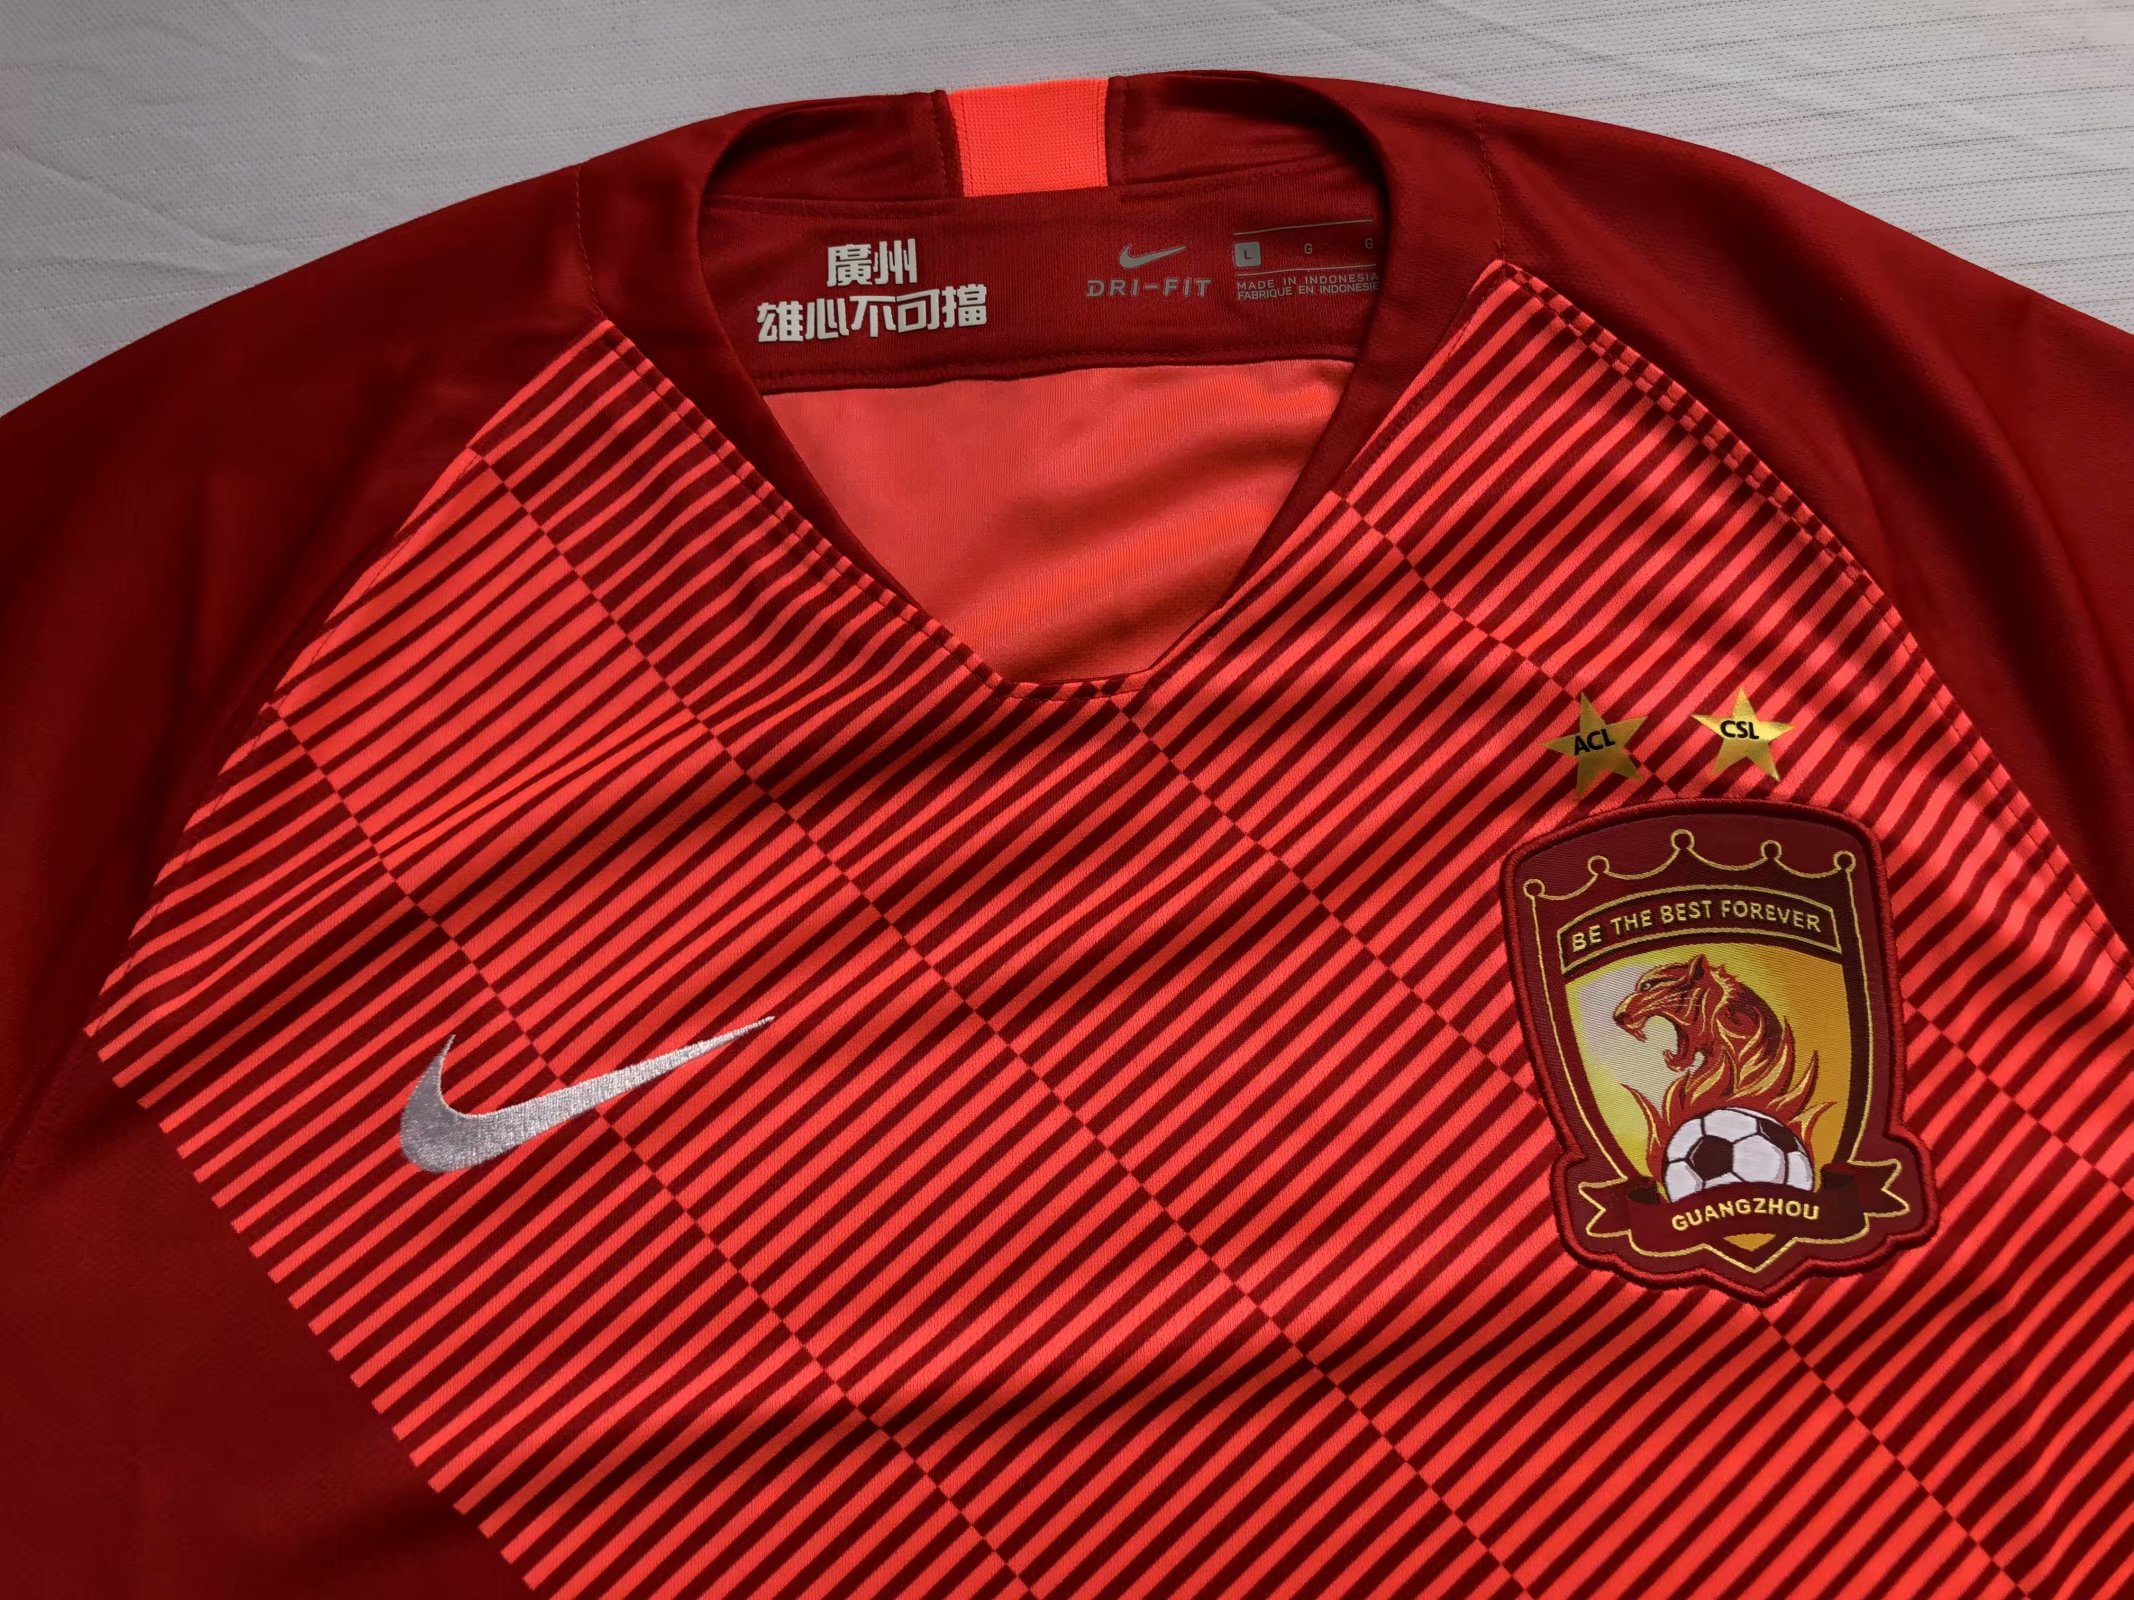 guangzhou jersey